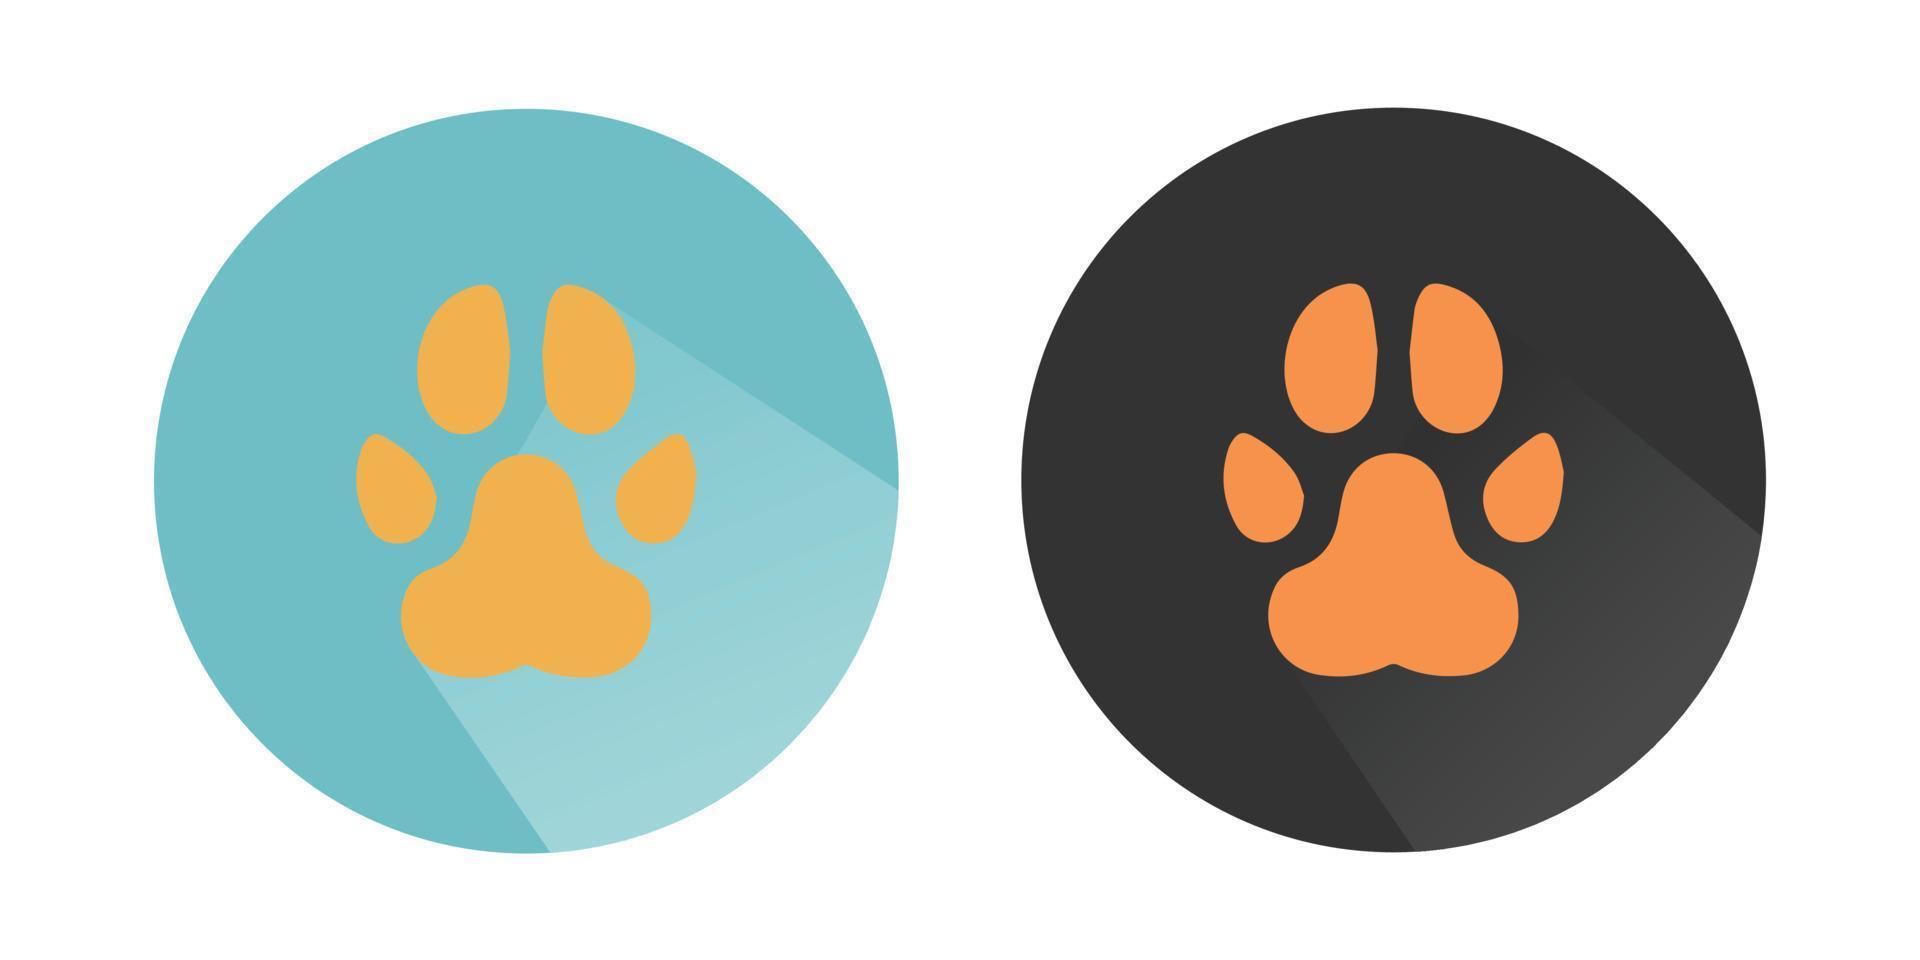 animale zampa icona, cane, cucciolo, gatto, orso, lupo piede Stampa, cucciolo piede, zampa logo colorato vettore icone